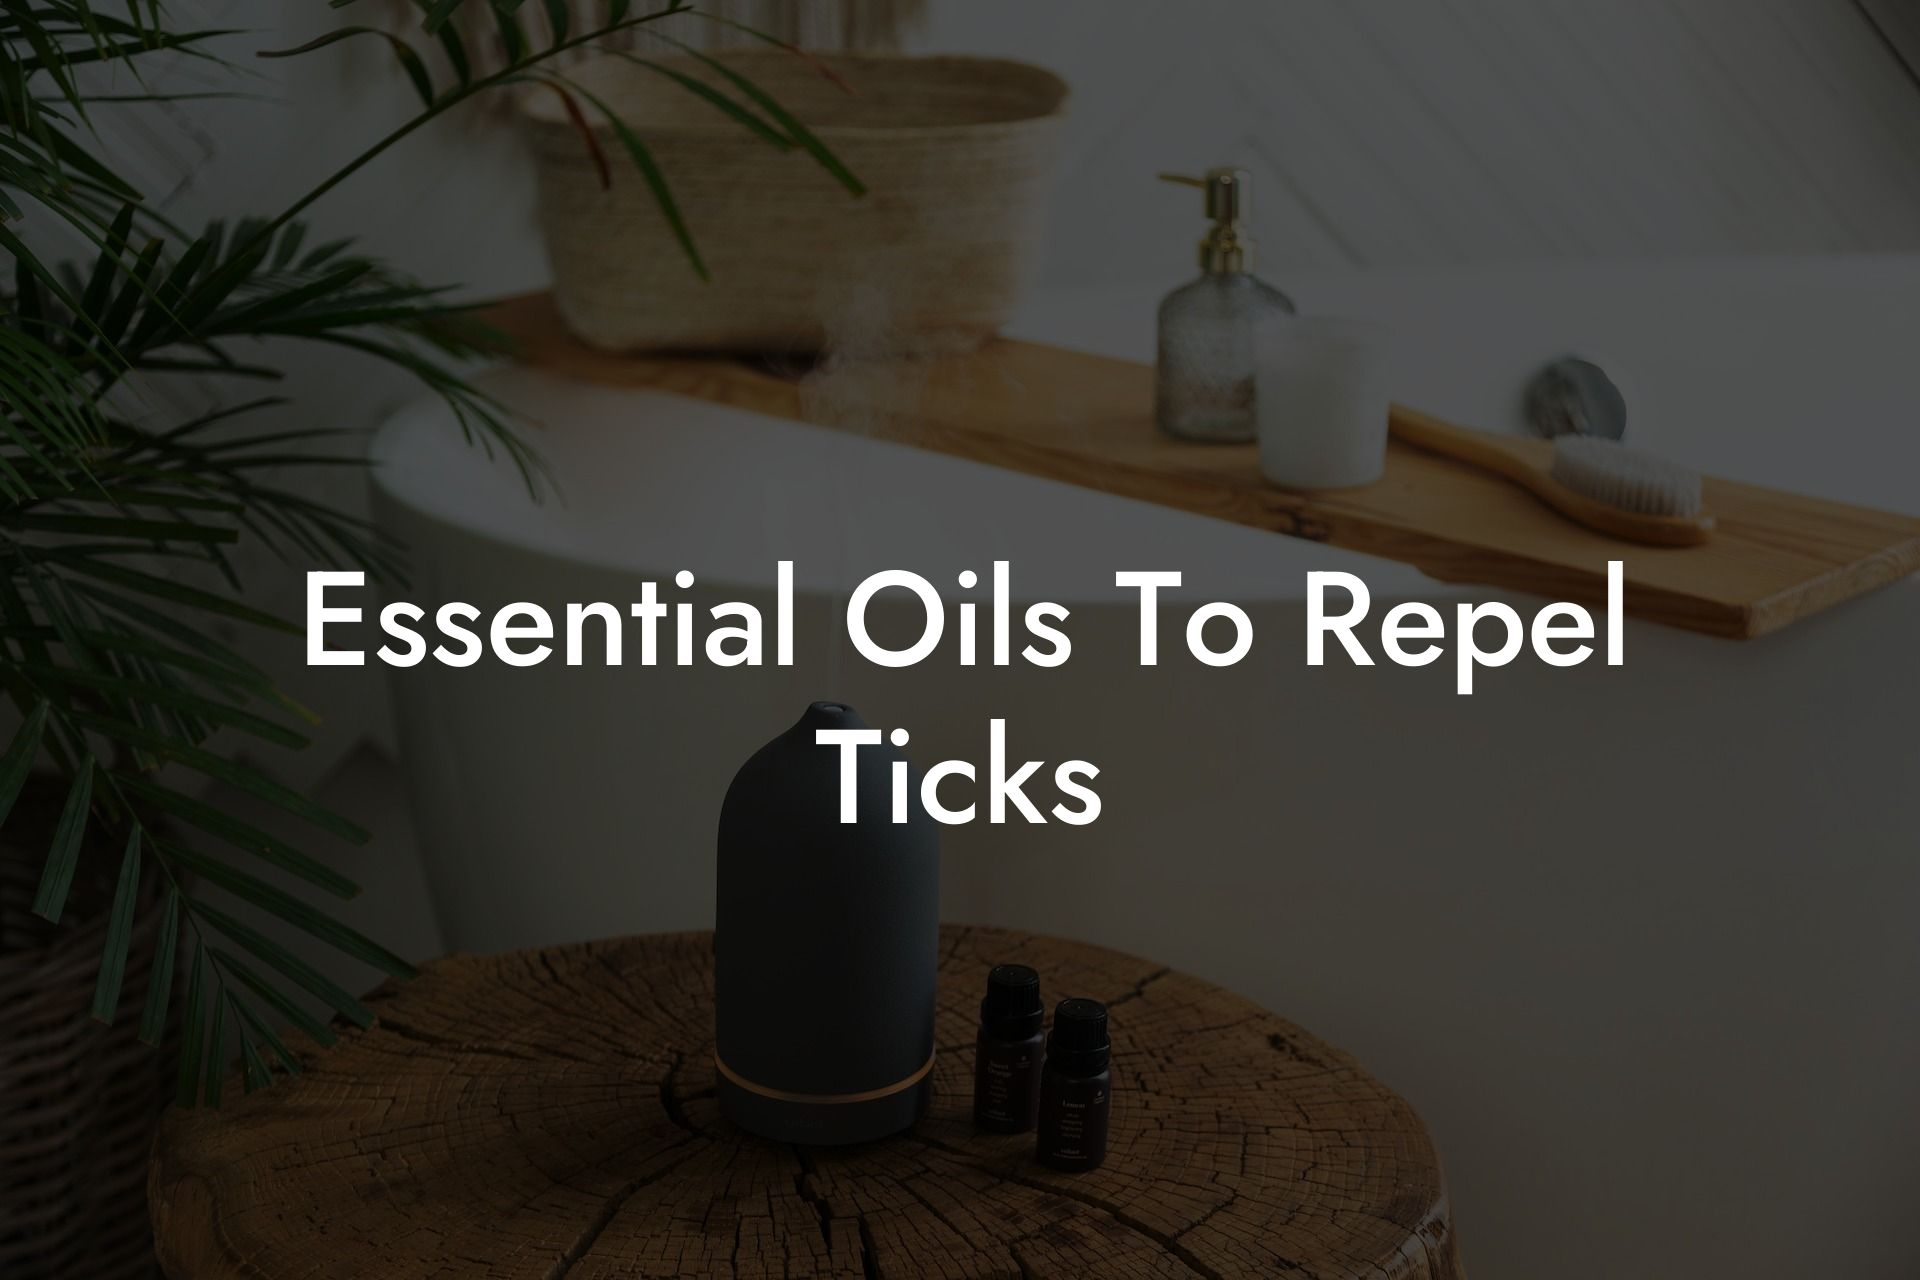 Essential Oils To Repel Ticks